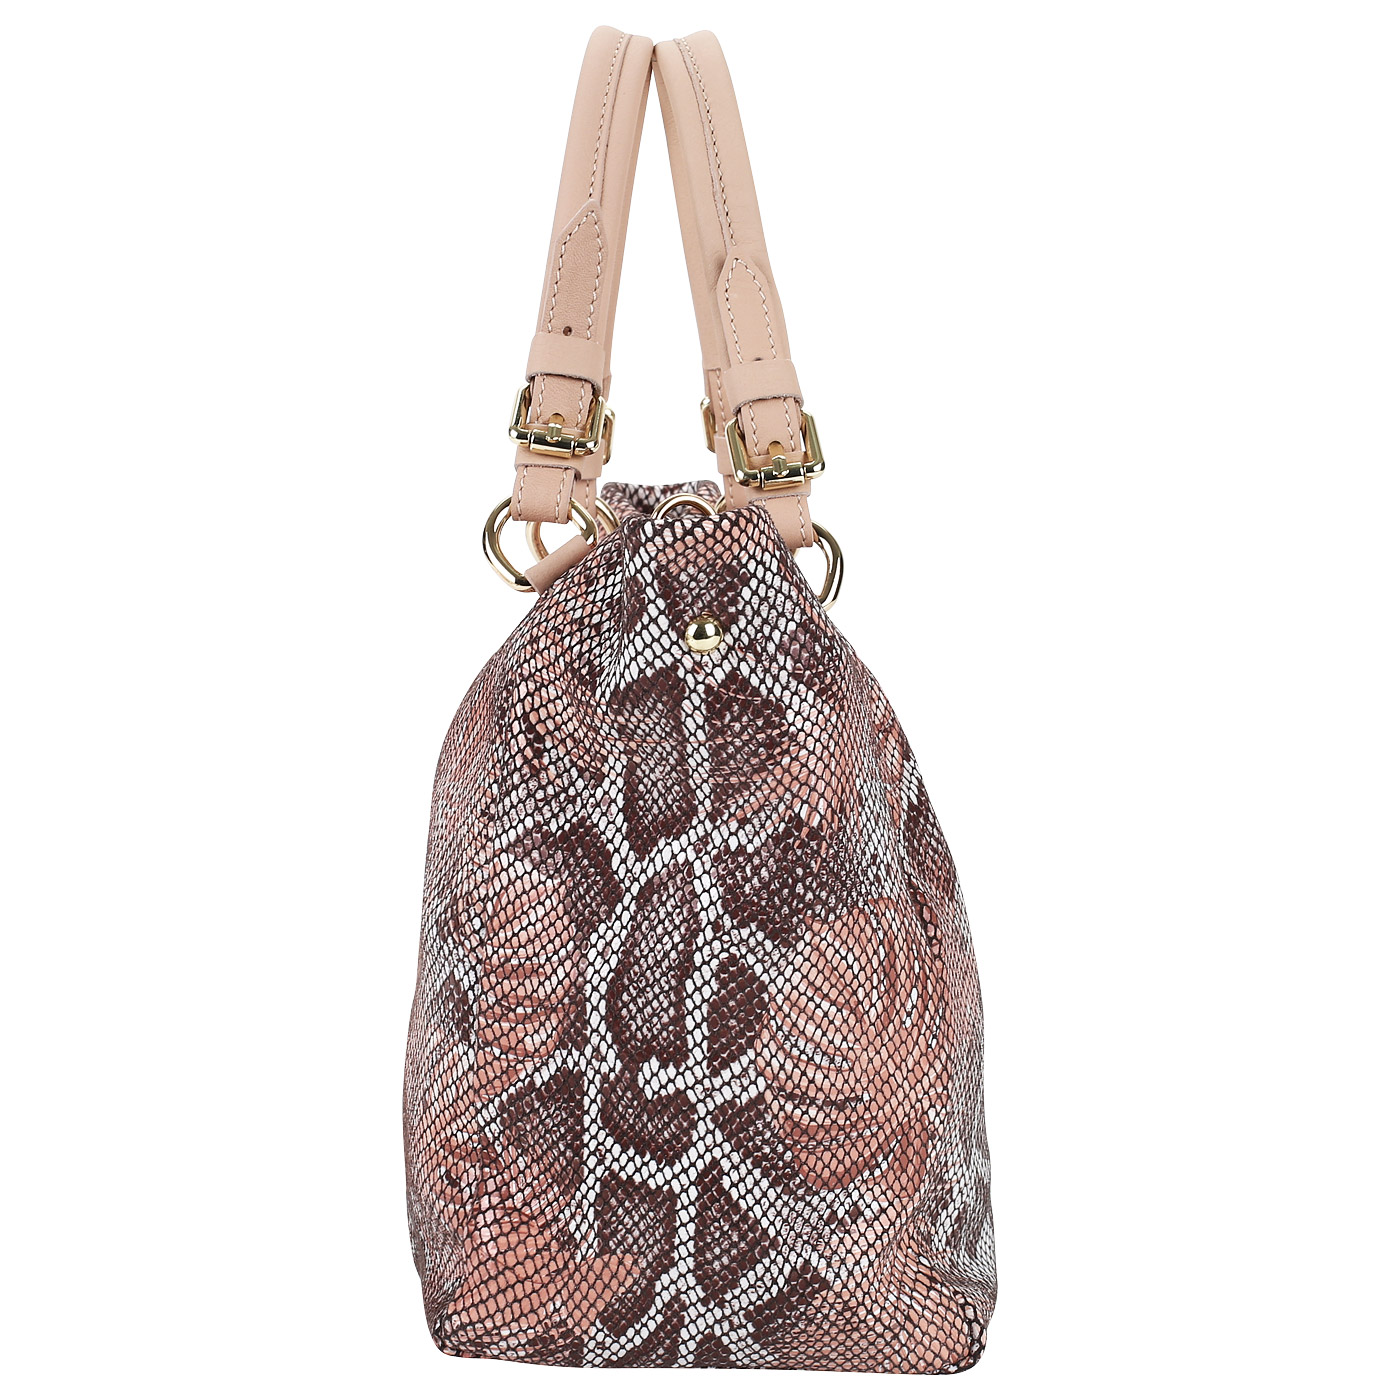 Кожаная женская сумка с отделкой под кожу питона Sara Burglar Ariel tropic